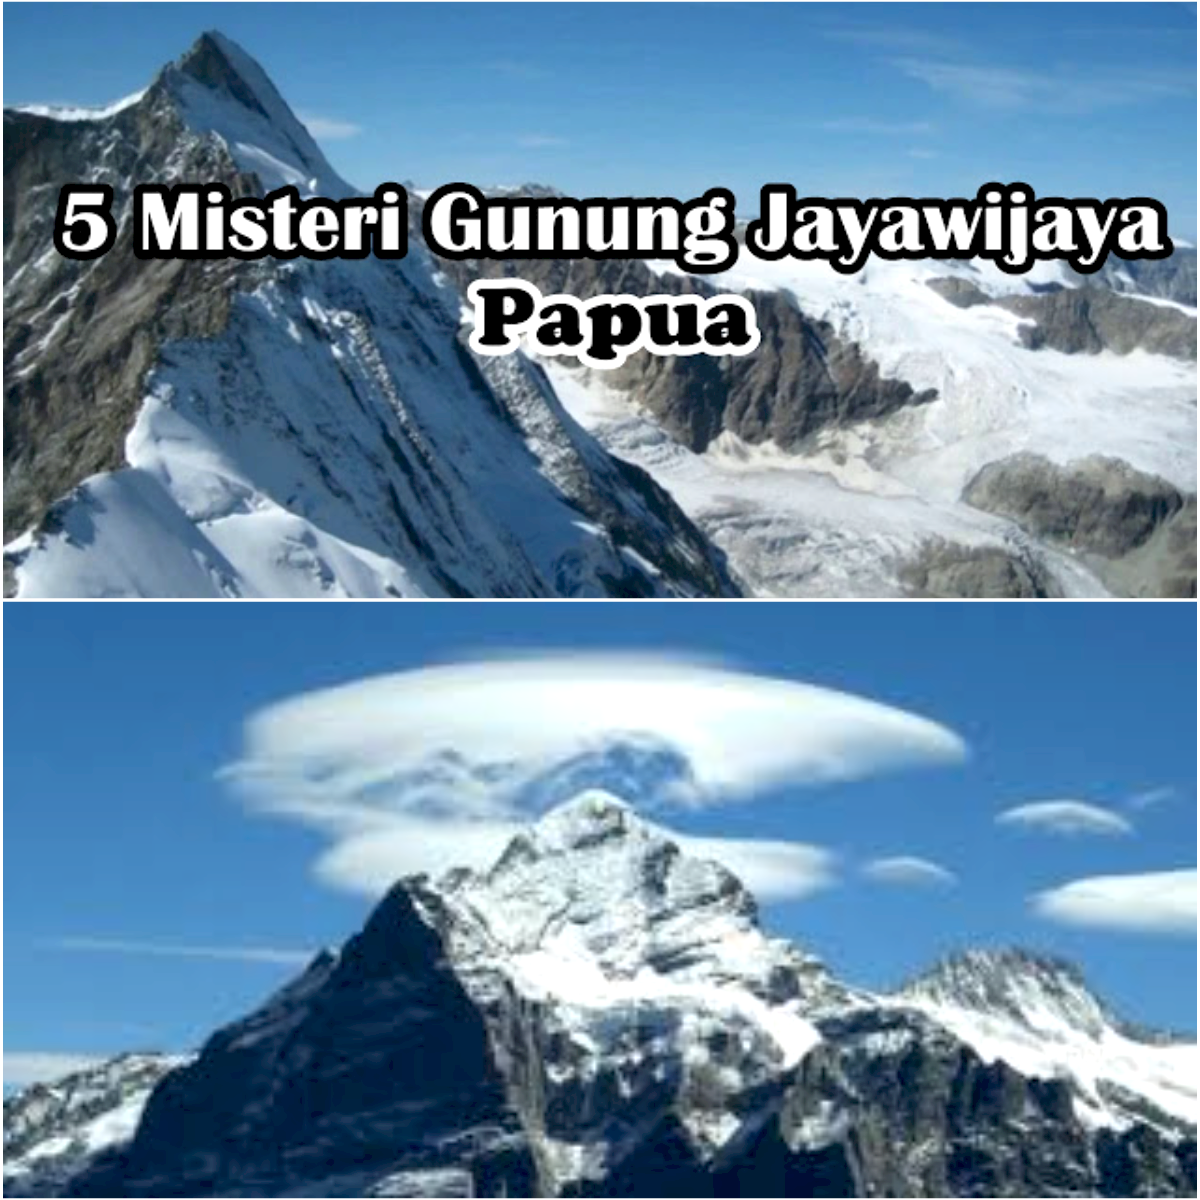 5 Hal Unik Tentang Gunung Jaya Wijaya, Benarkah Ada Masyarakat Pribumi yang Misterius Disana?